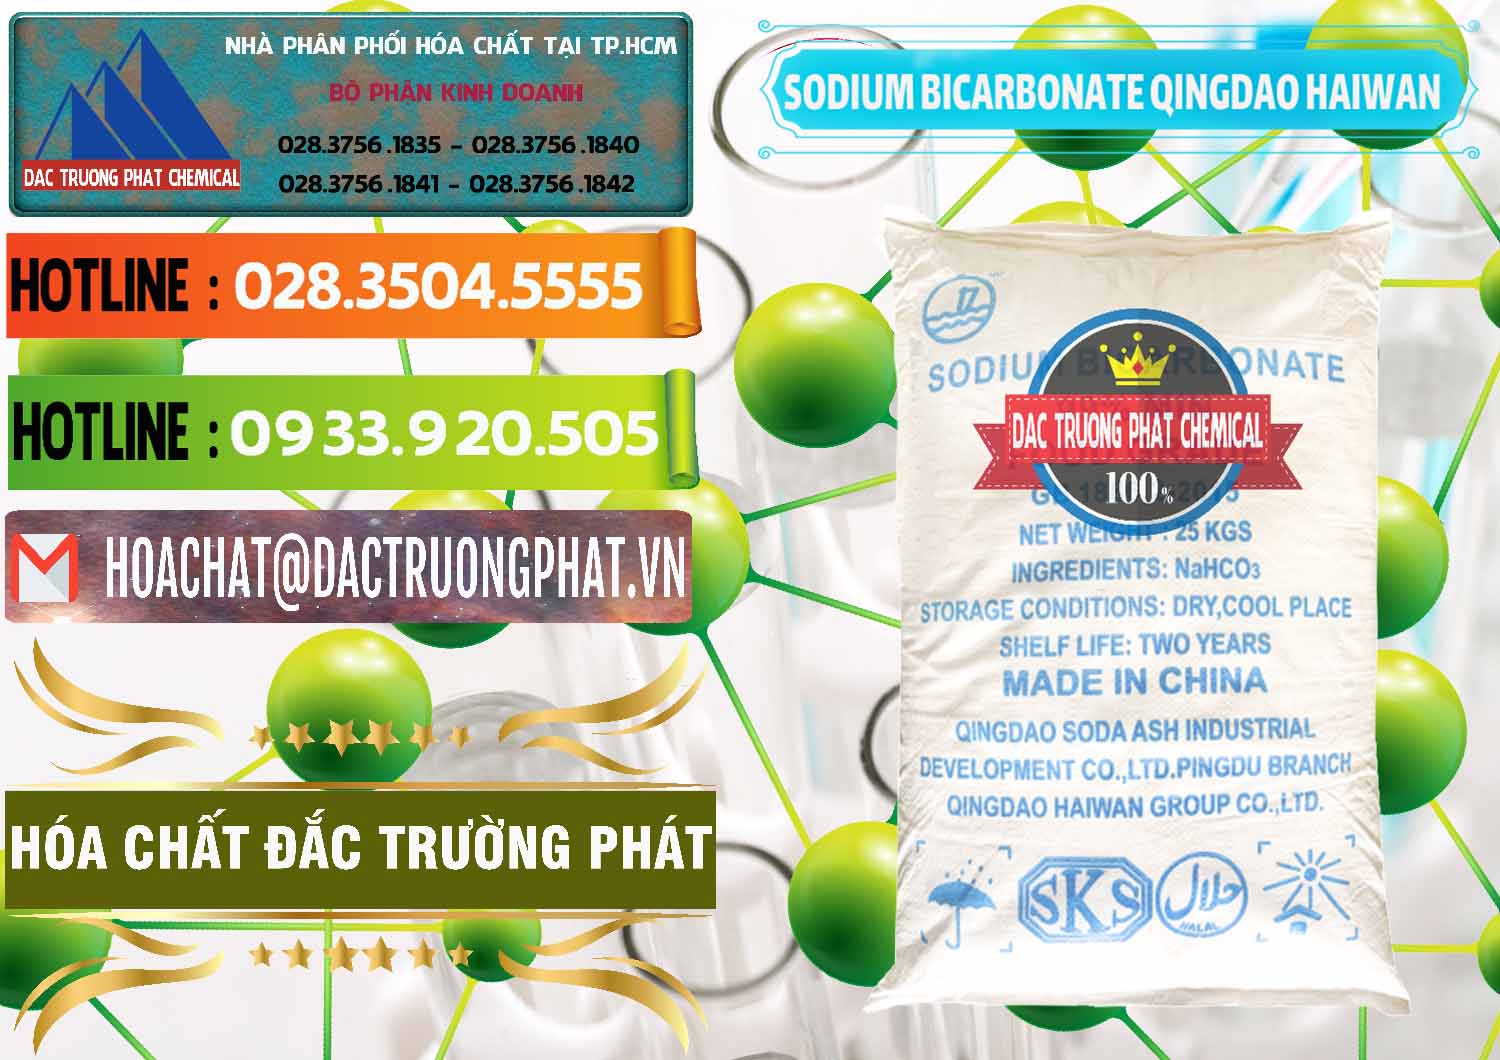 Cty nhập khẩu _ bán Sodium Bicarbonate – Bicar NaHCO3 Food Grade Qingdao Haiwan Trung Quốc China - 0258 - Nhà phân phối - cung cấp hóa chất tại TP.HCM - cungcaphoachat.com.vn